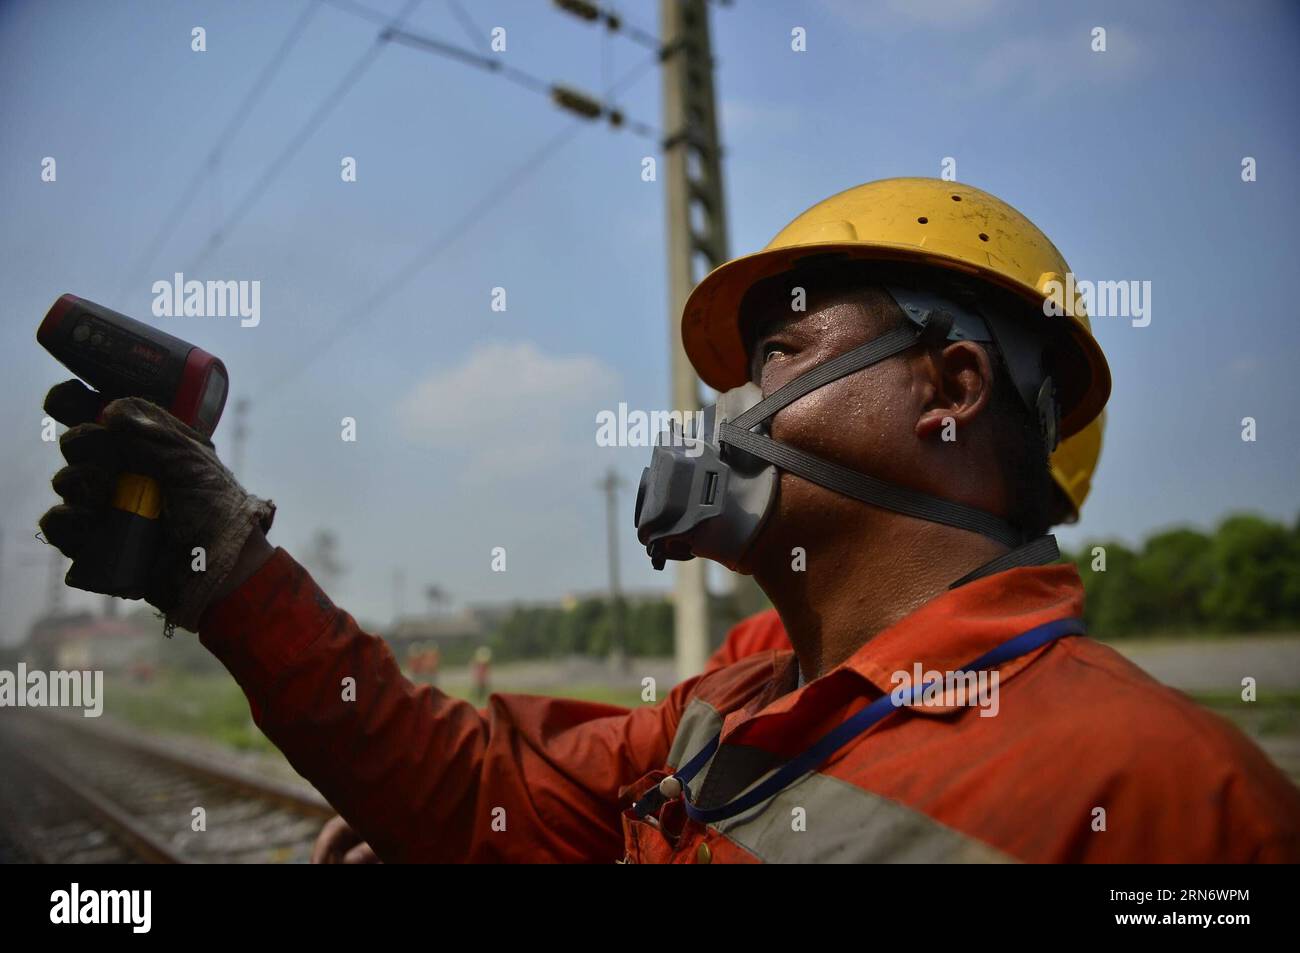 (150808) -- NANCHANG, 8 août 2015 -- Un ouvrier mesure la température d'un mécanicien d'entretien routier dans la section Yangjialing du chemin de fer Beijing-Jiujiang à Yingtan, province du Jiangxi dans l'est de la Chine. Les travailleurs ici toléraient des températures élevées pendant qu'ils travaillaient. ) (lfj) CHINA-JIANGXI-RAILROAD MAINTAINERS (CN) ZhouxMi PUBLICATIONxNOTxINxCHN 150808 Nanchang août 8 2015 un travailleur mesure la température d'un mécanicien de la section de Yangjialing du chemin de fer Jiujiang de Beijing Jiujiang à Yingtan East China S Jiangxi province de Jiangxi ici les travailleurs tolèrent des températures élevées pendant qu'ils travaillaient lfj Chine Jiangxi Rai Banque D'Images